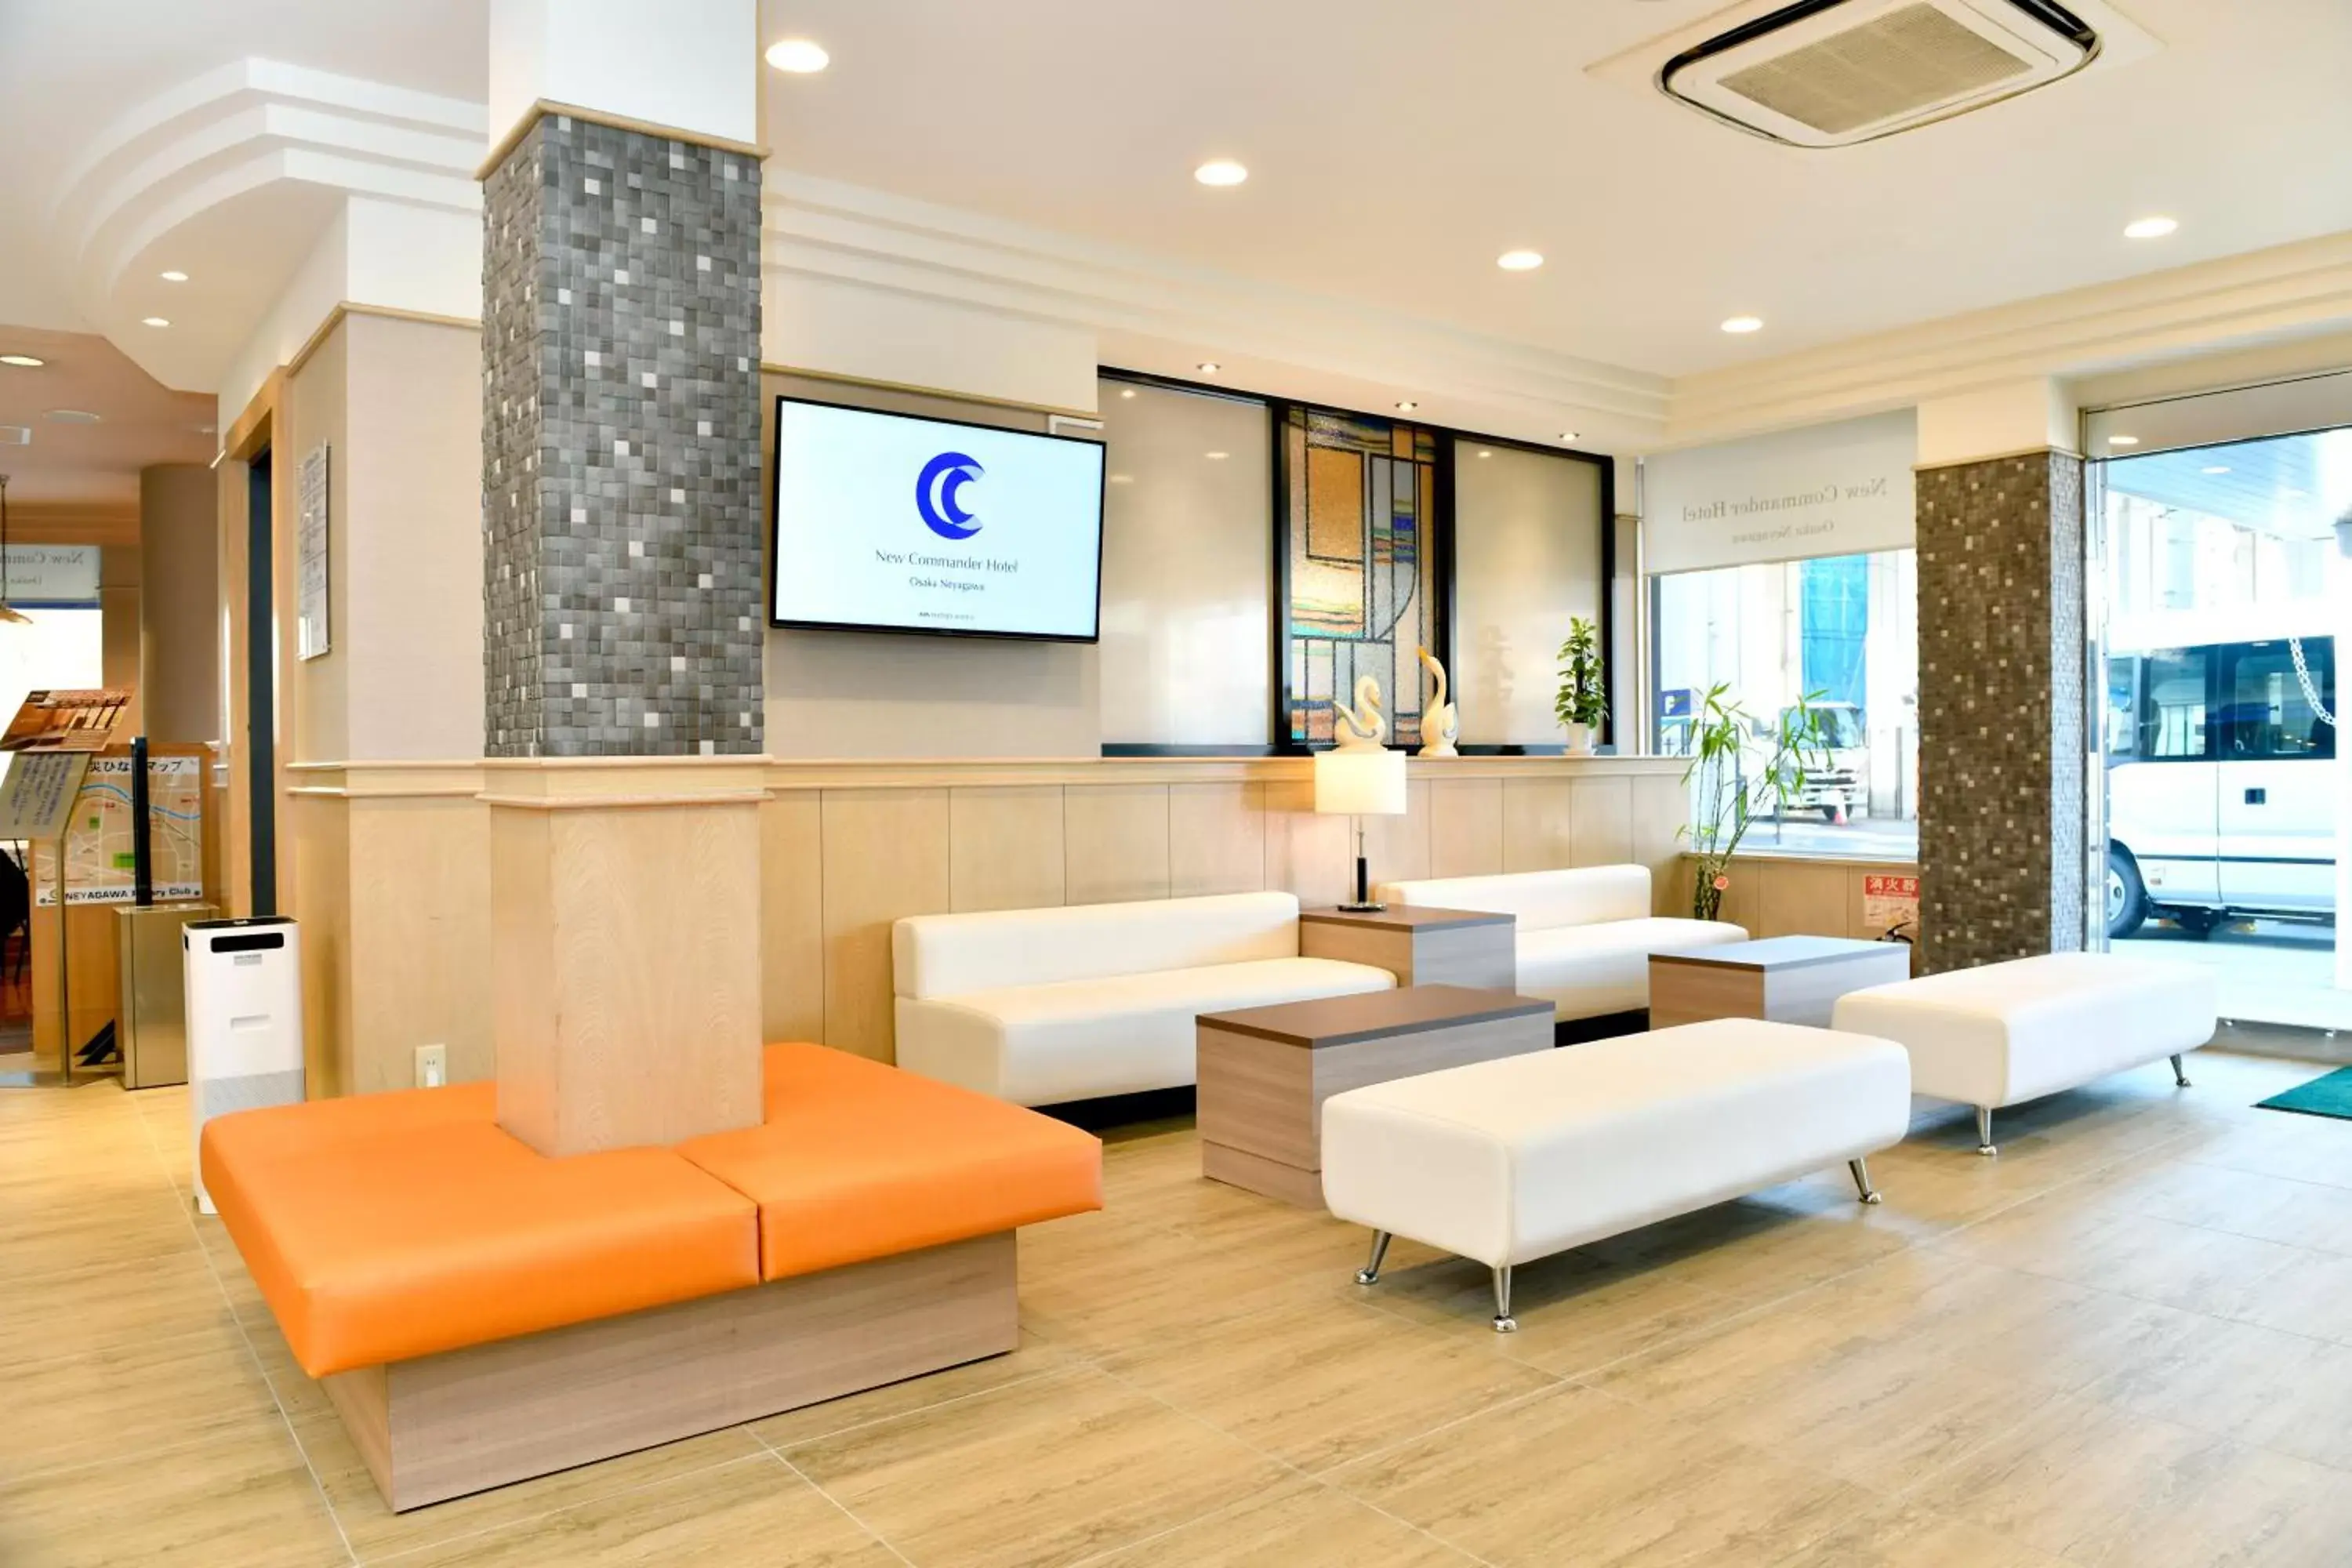 Lobby or reception, Lobby/Reception in New Commander Hotel Osaka Neyagawa